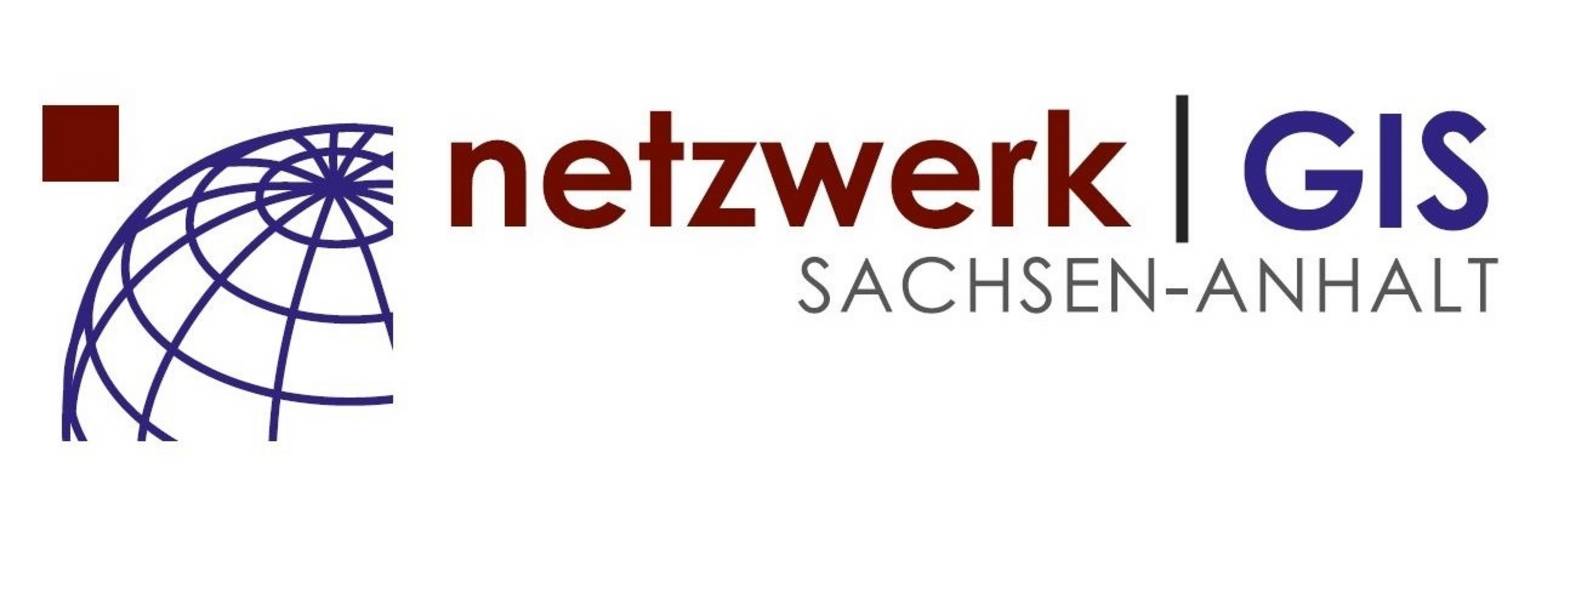 Logo netzwerk GIS